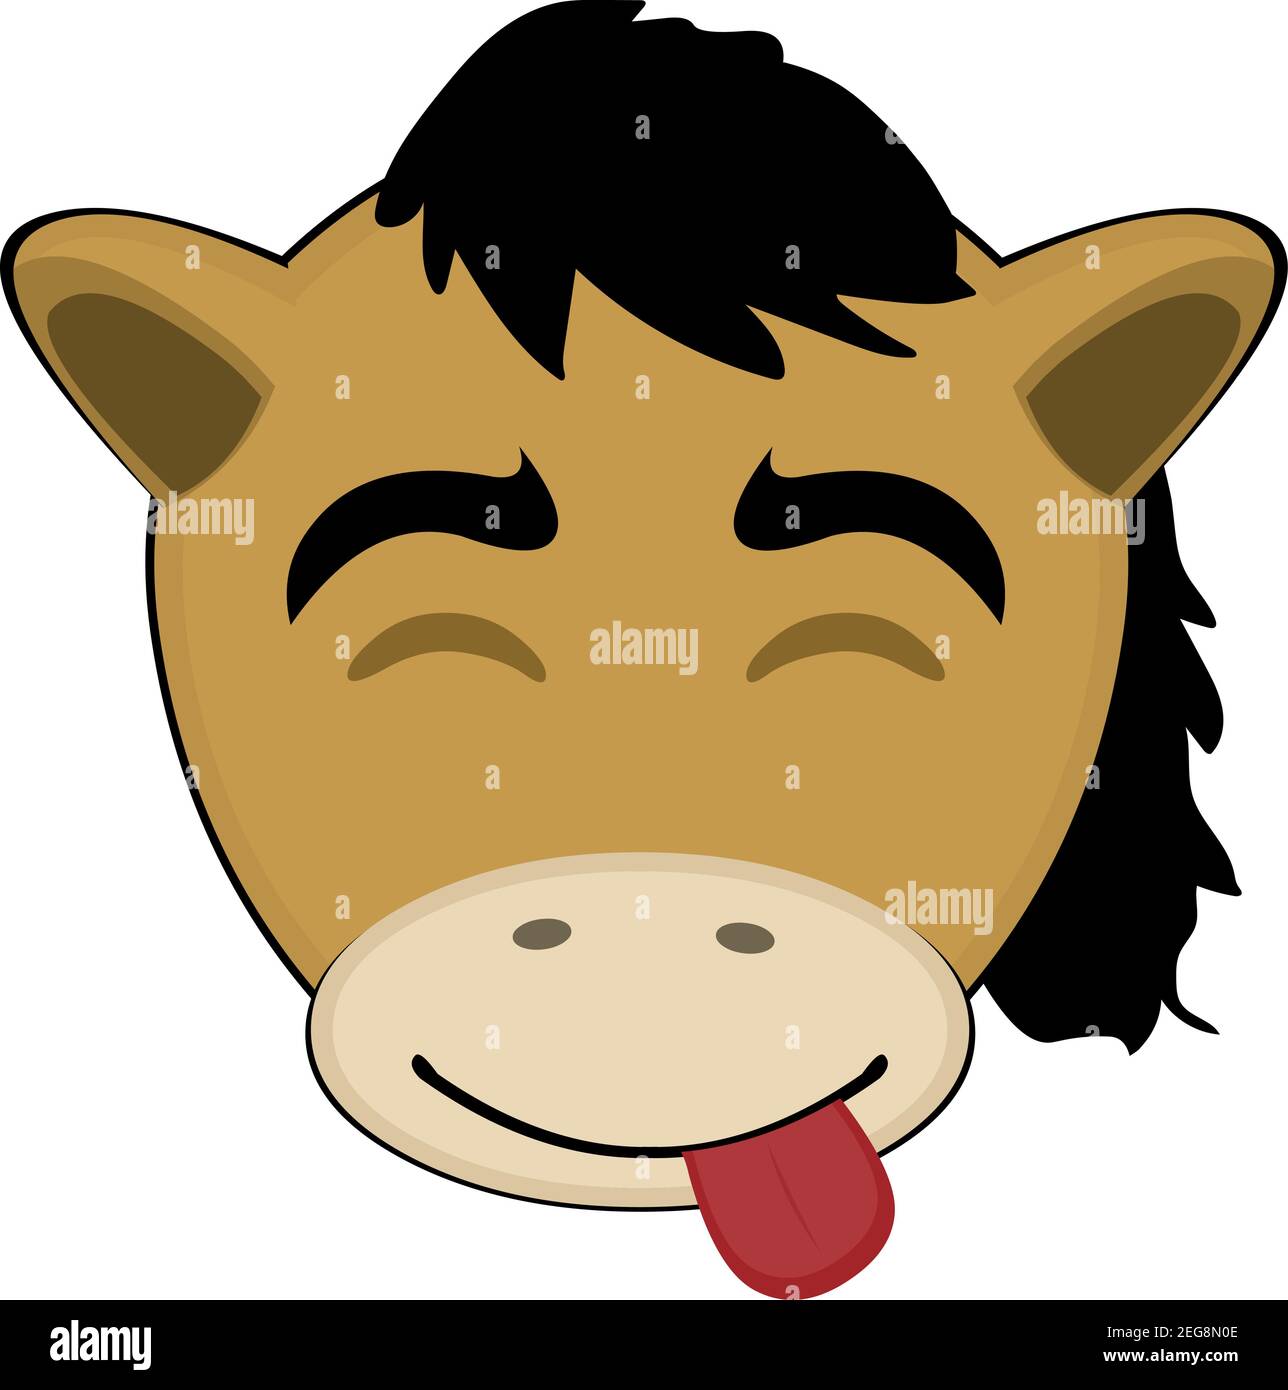 Illustration vectorielle d'émoticone dessin animé de la tête d'un poney avec une expression joyeuse de plaisir avec ses yeux fermés et en collant sa langue Illustration de Vecteur